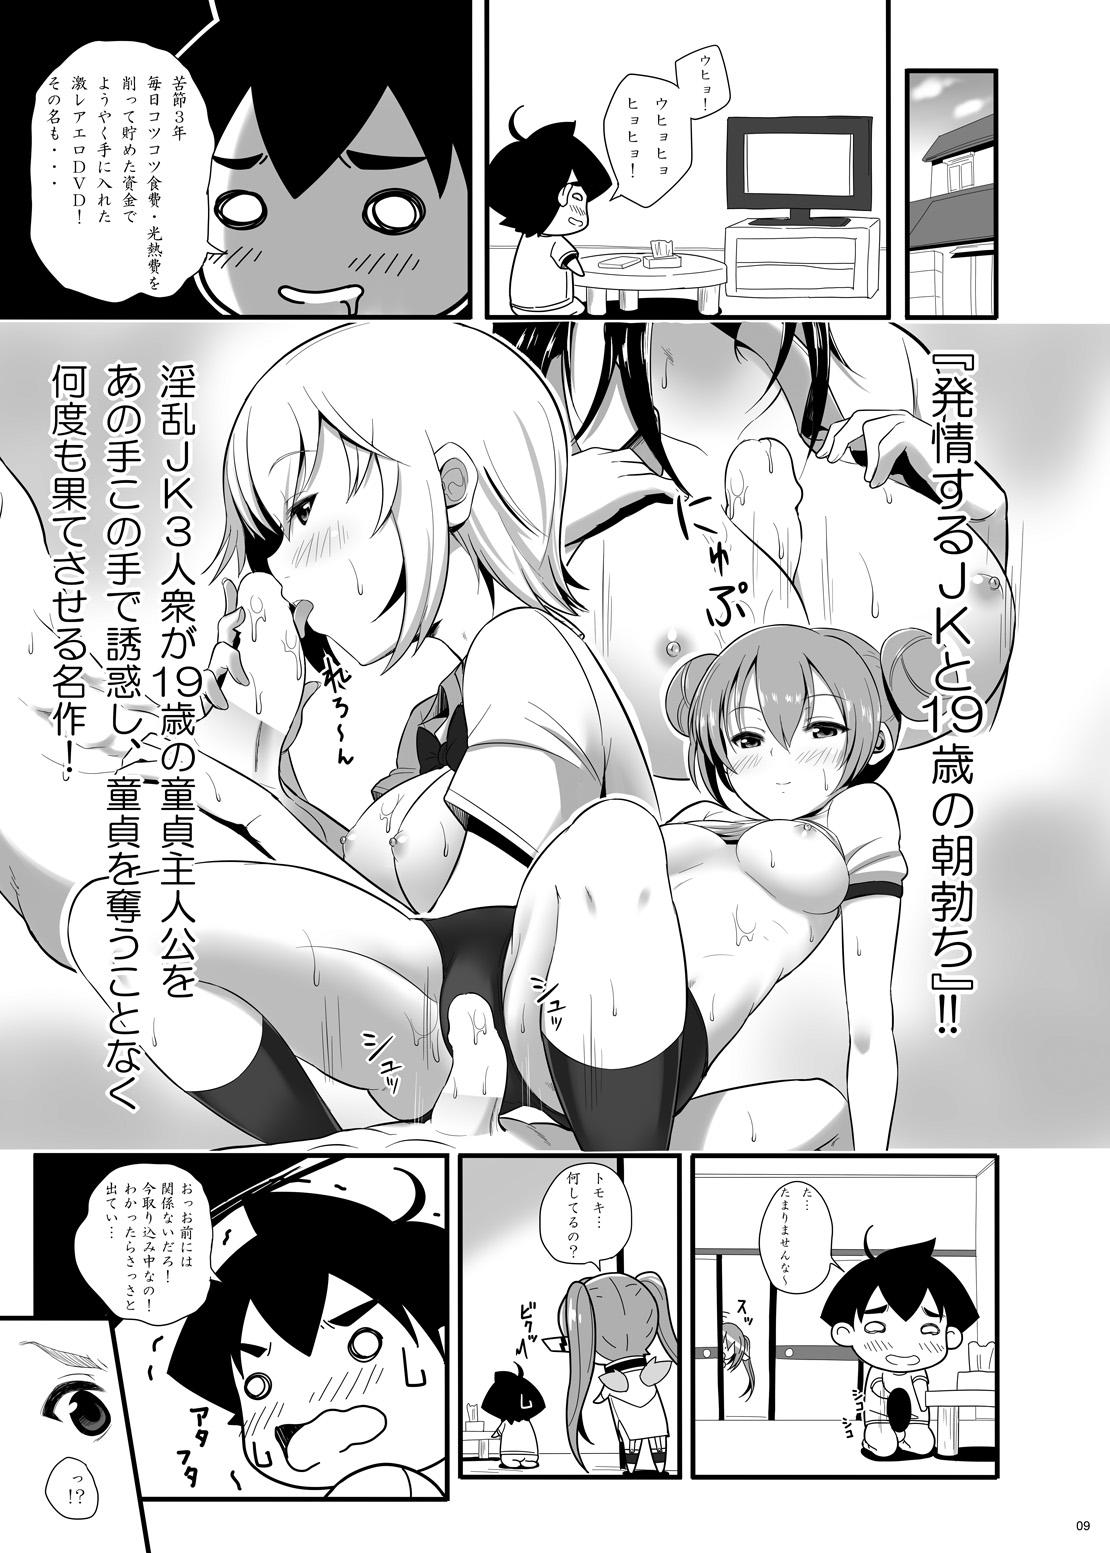 Infiel Nymph ga Ninpu ni Naru Toki - Sora no otoshimono Homemade - Page 8